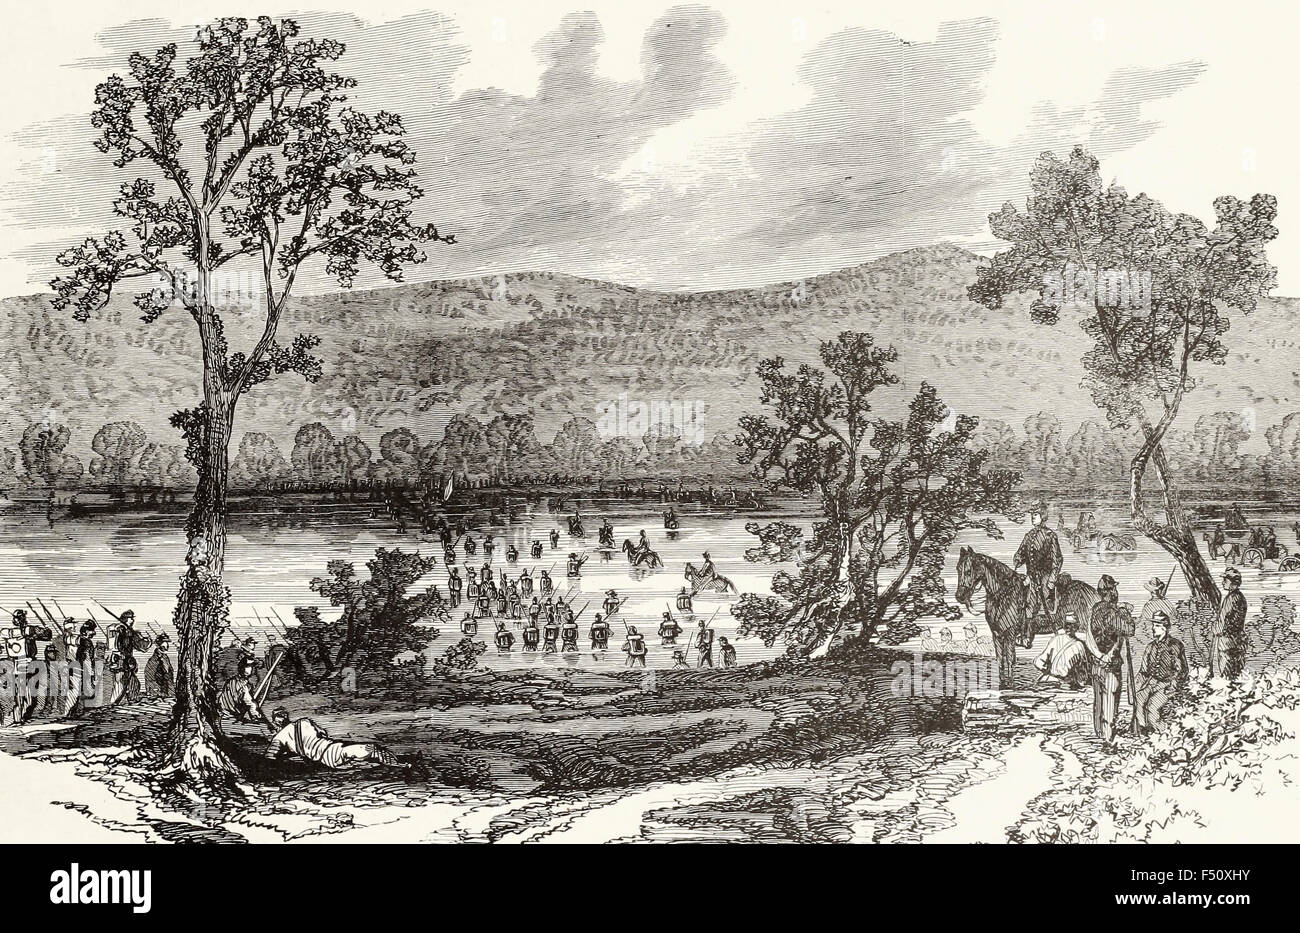 La guerre en Géorgie - Le 17e Corps d'armée à gué de la Chattahoochee Boswell's Ferry, Juillet 19th, 1864. Guerre civile USA Banque D'Images